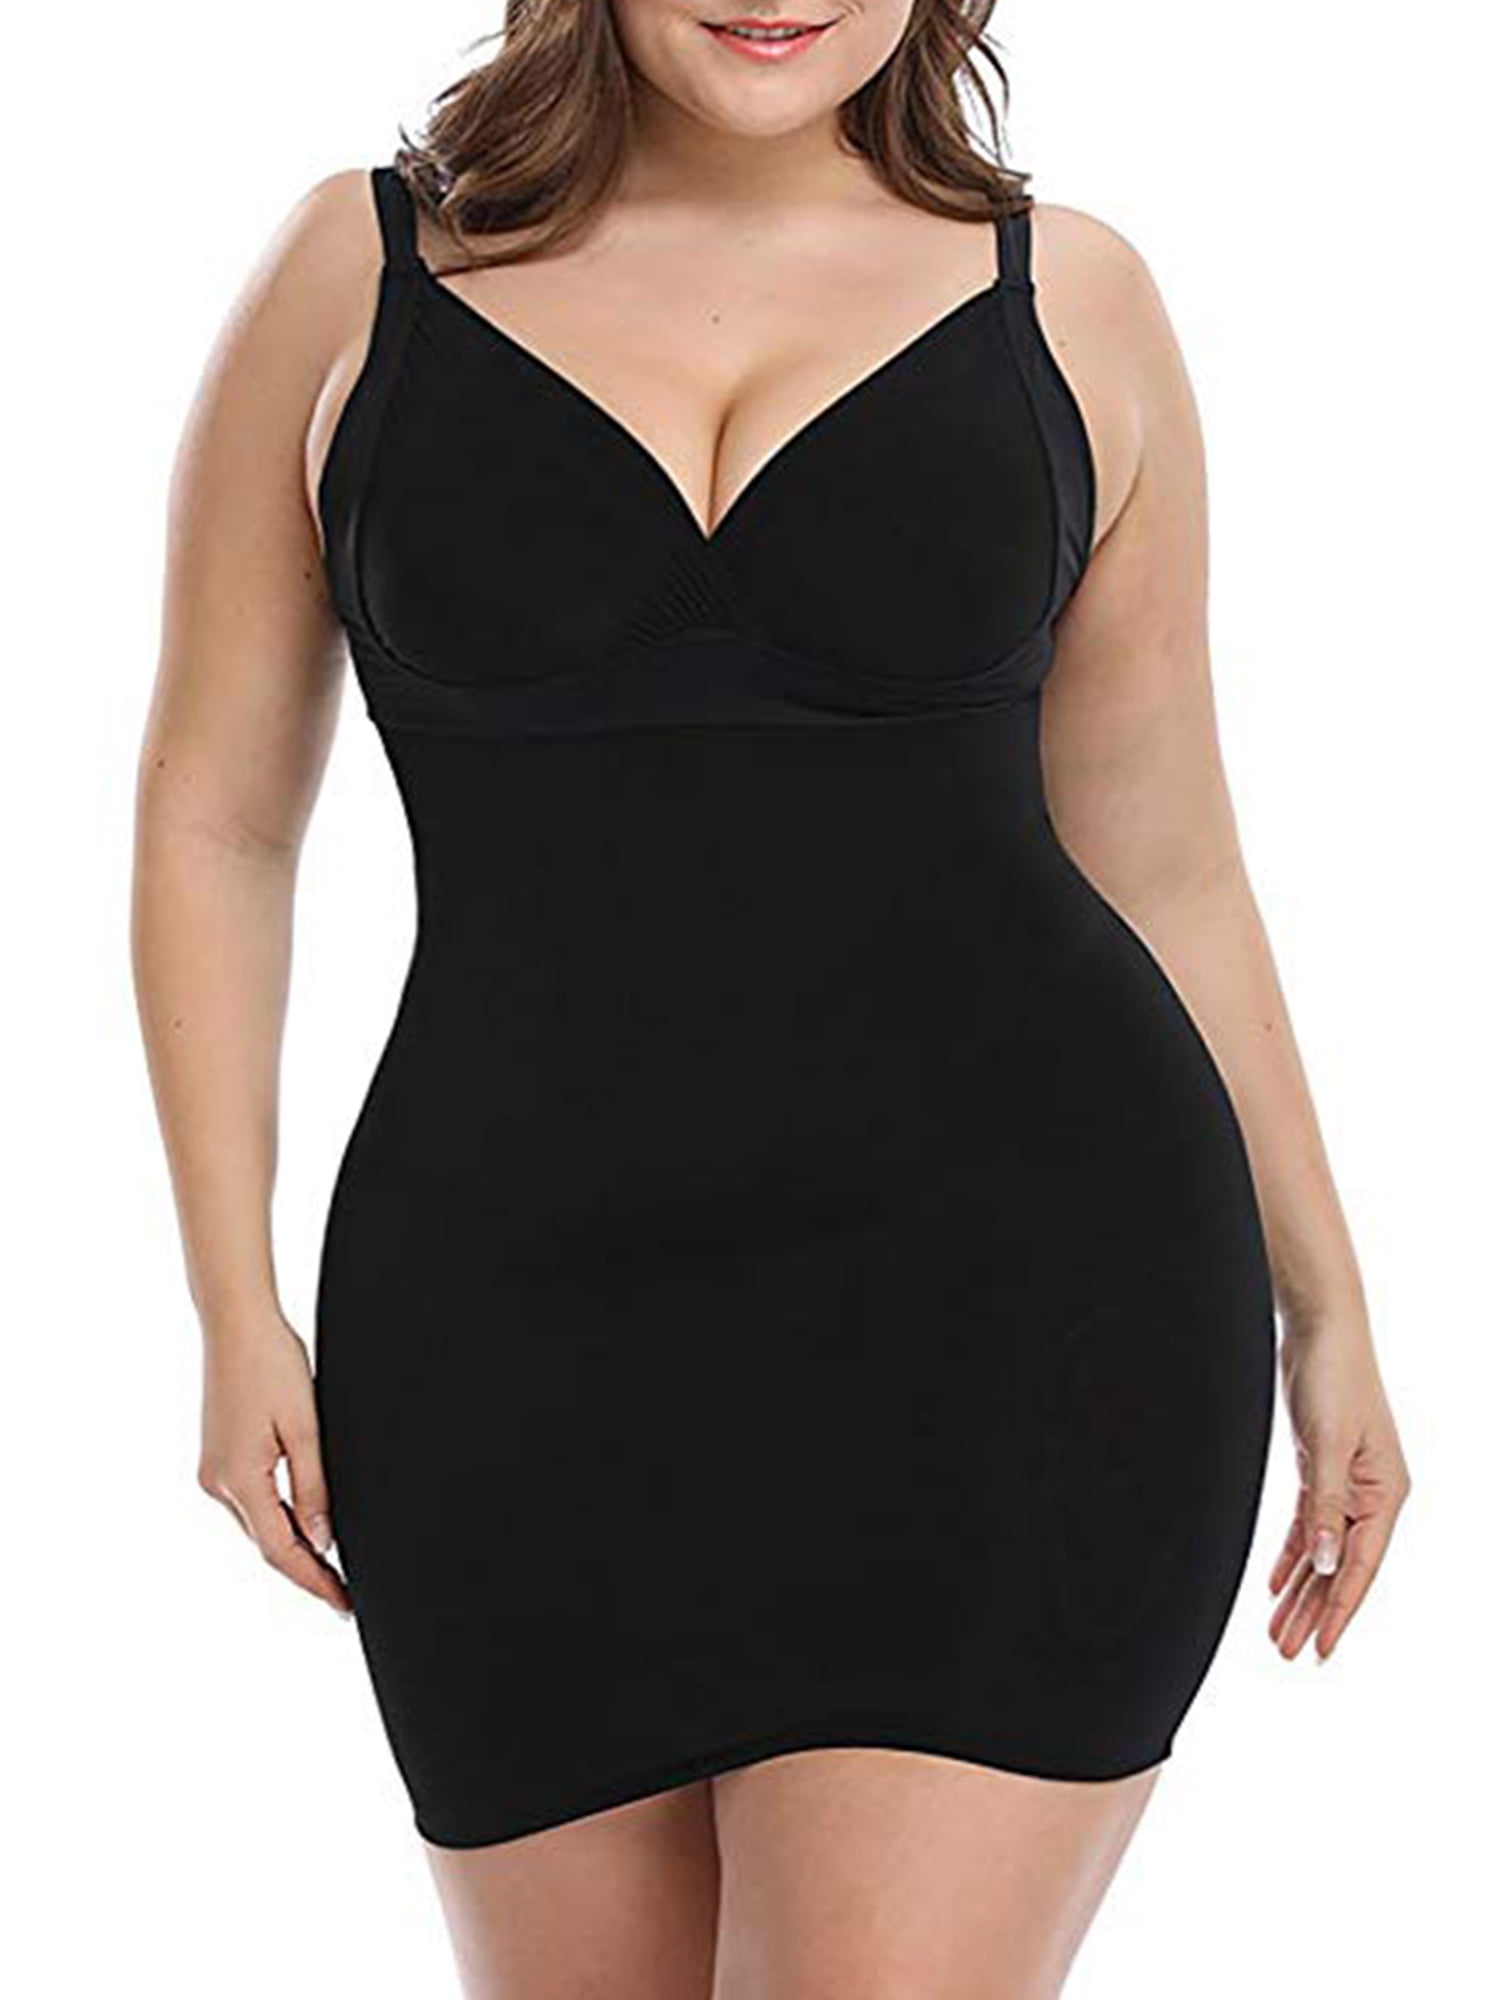 SAYFUT Women's Control Shapewear Plus Size Slip Shapewear Full Slips Long Dress Shaper Black/Nude - Walmart.com